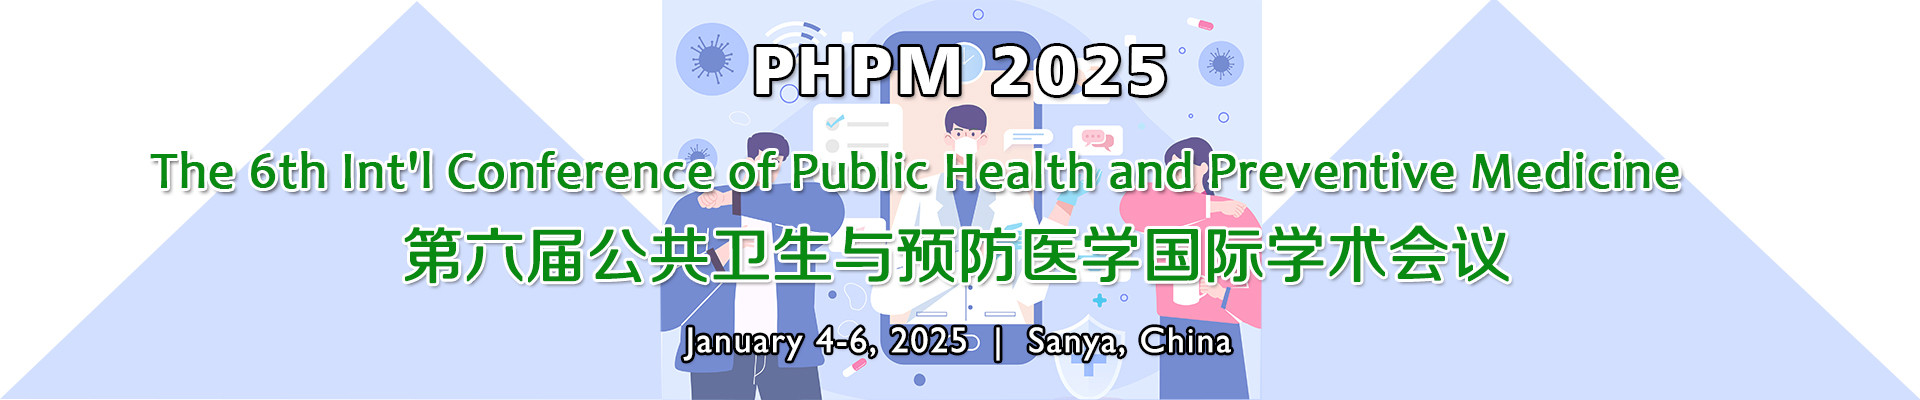 第六届公共卫生与预防医学国际学术会议(PHPM 2025)